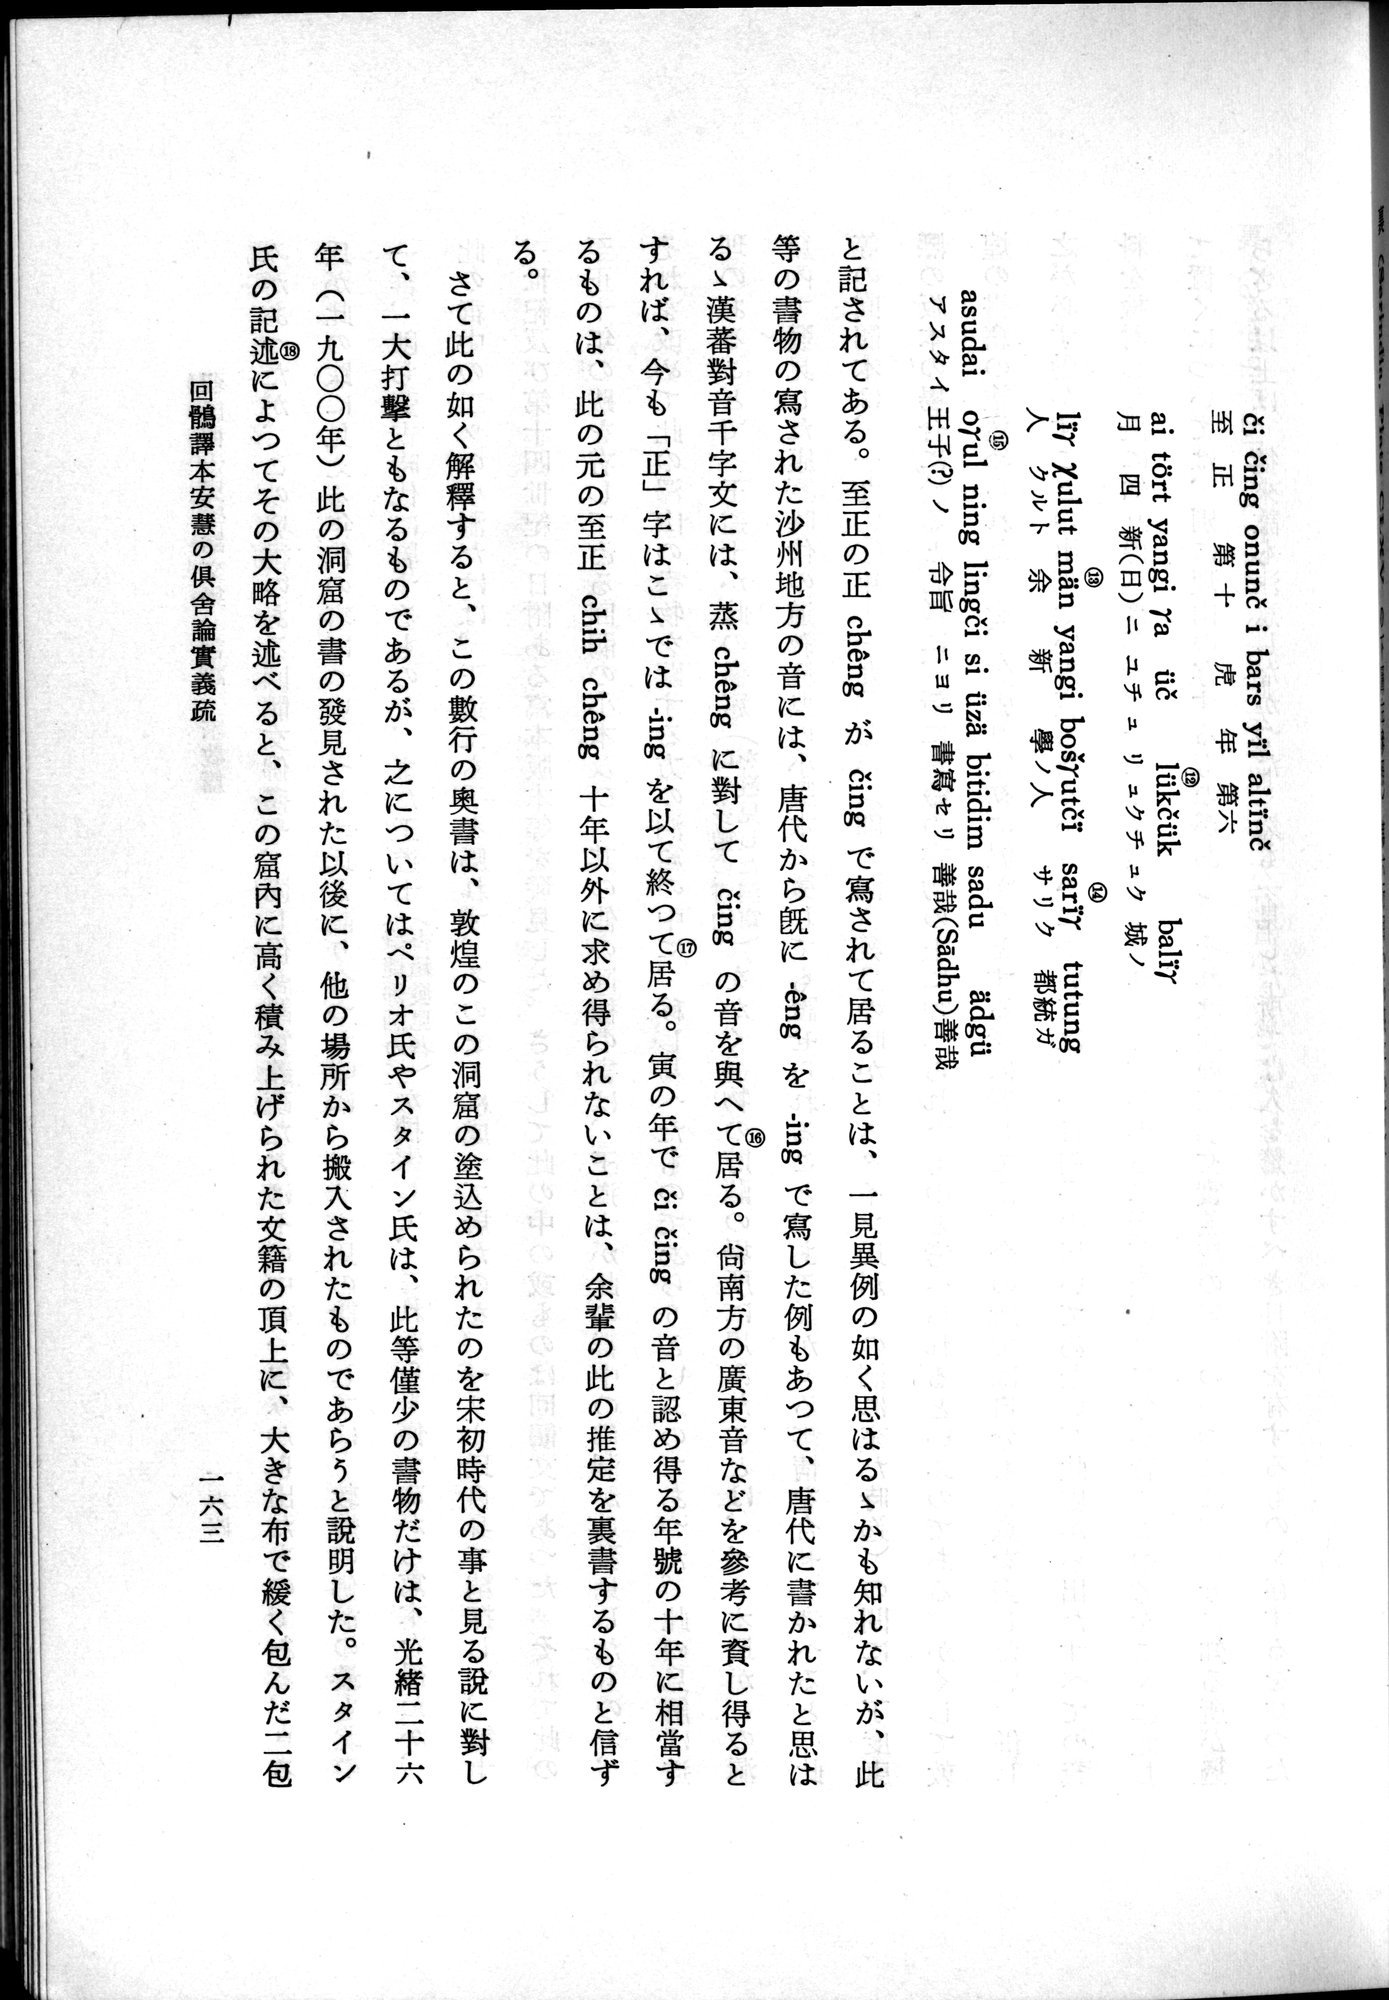 羽田博士史学論文集 : vol.2 / Page 225 (Grayscale High Resolution Image)